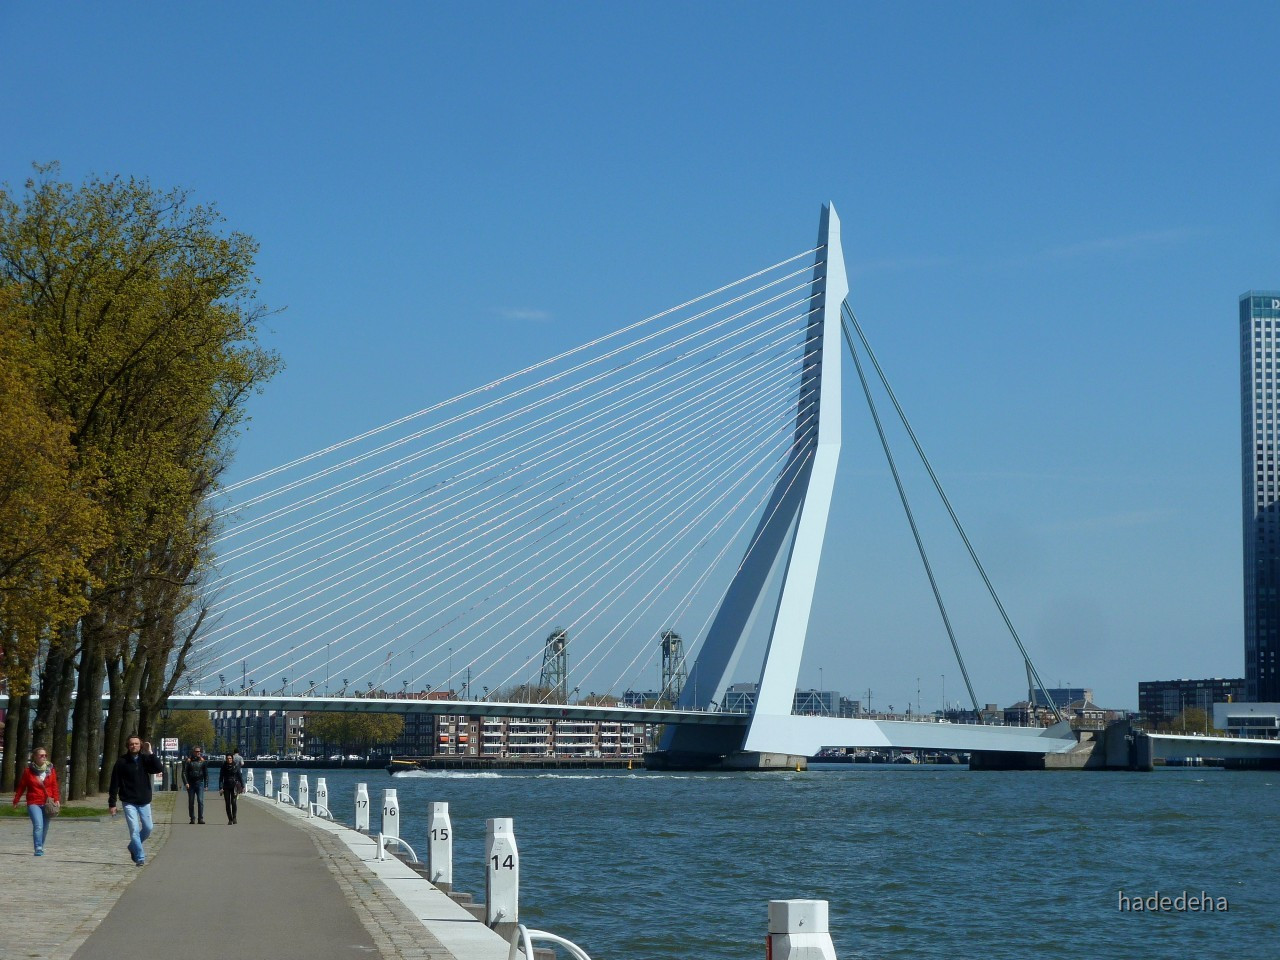 Rotterdam Erasmusbrücke - Schoener Reisen » Forum ...